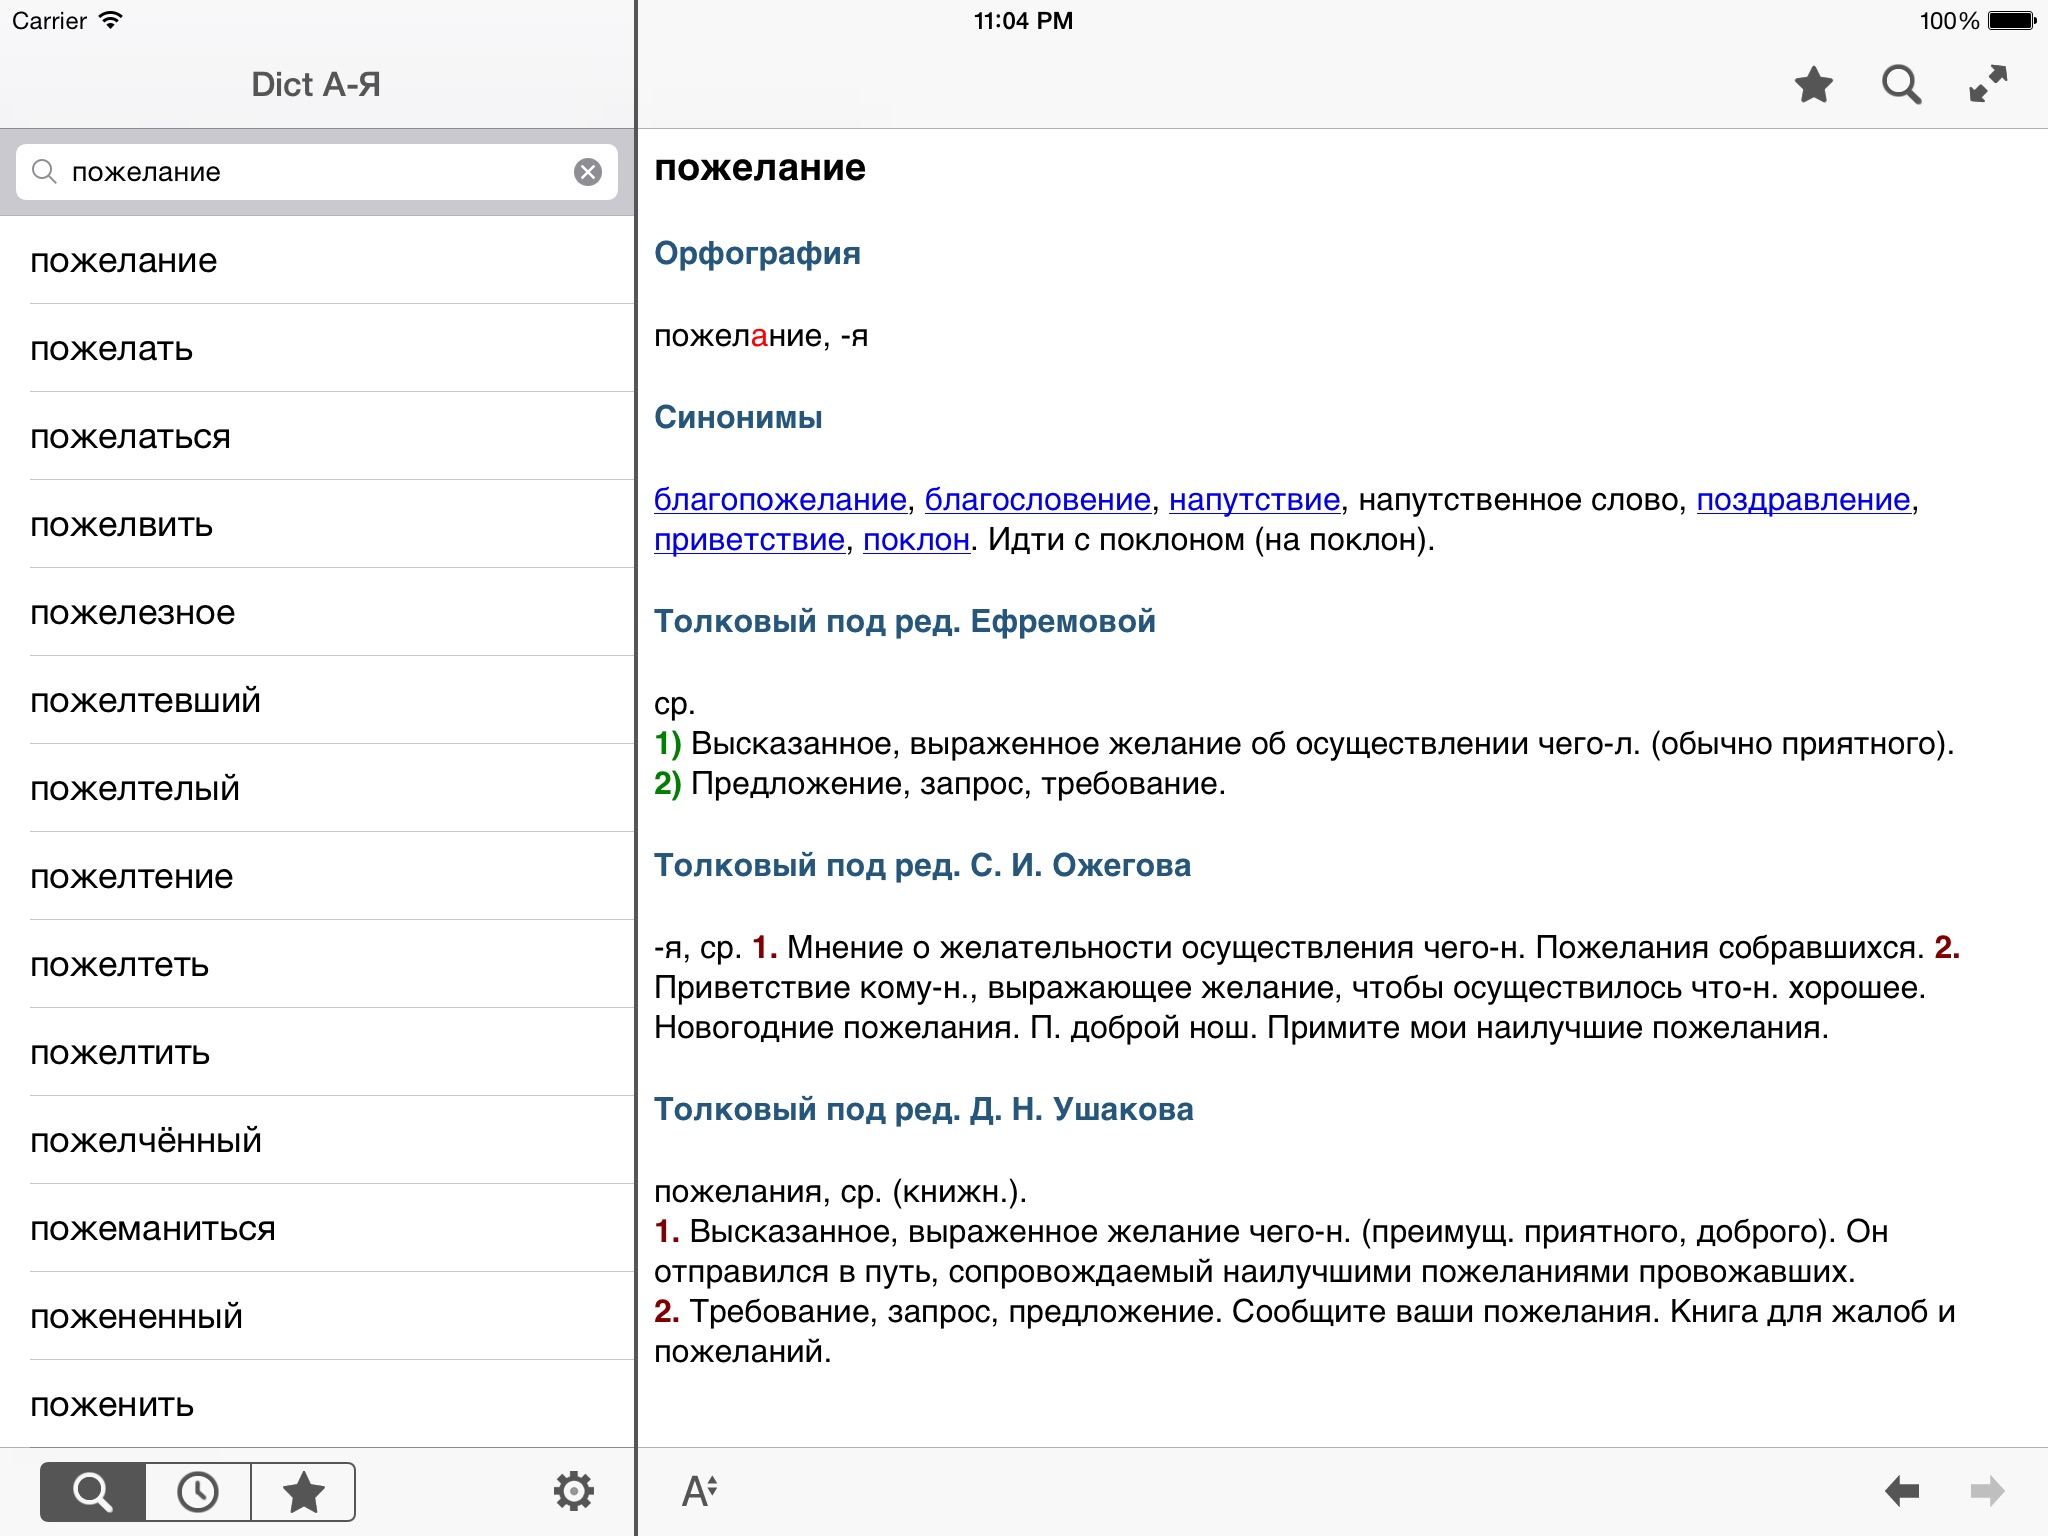 Dict А-Я for iPad screenshot 2